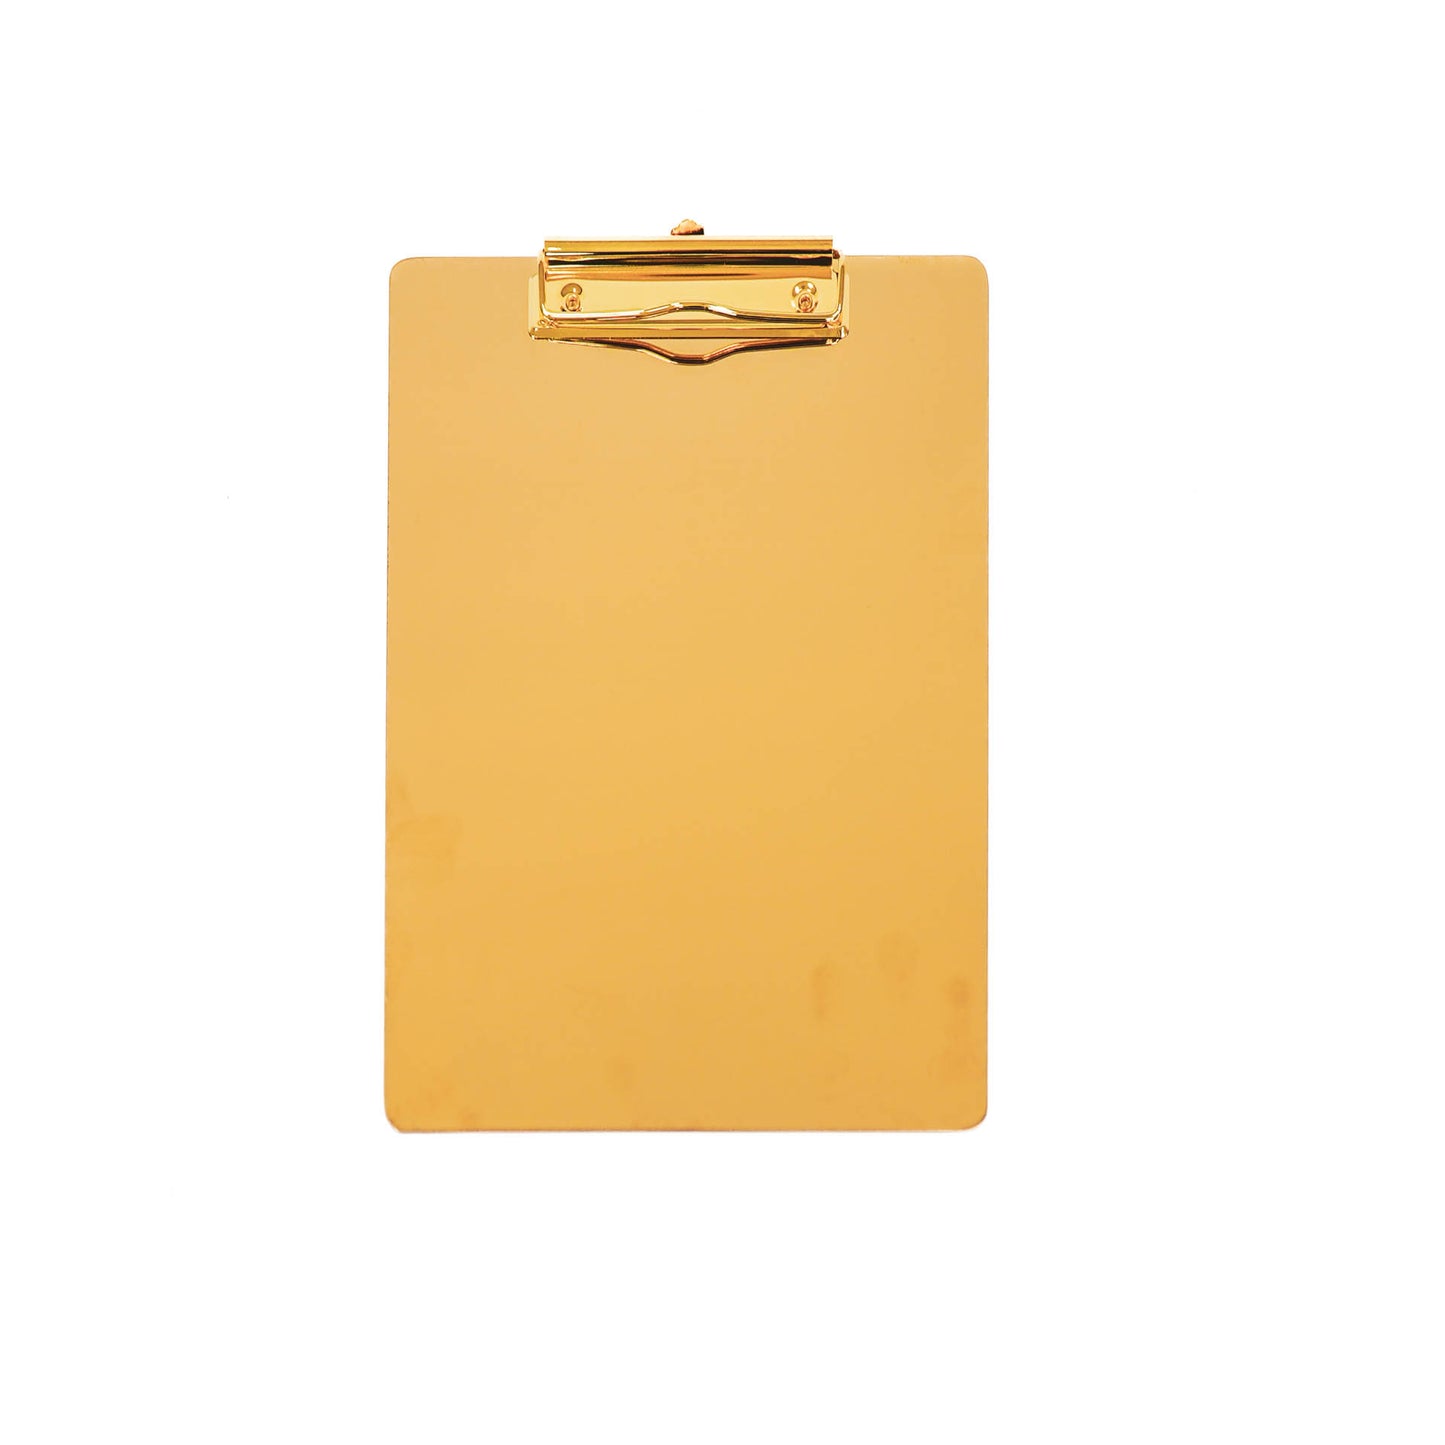 HV Golden Memo board - 22.5x31cm